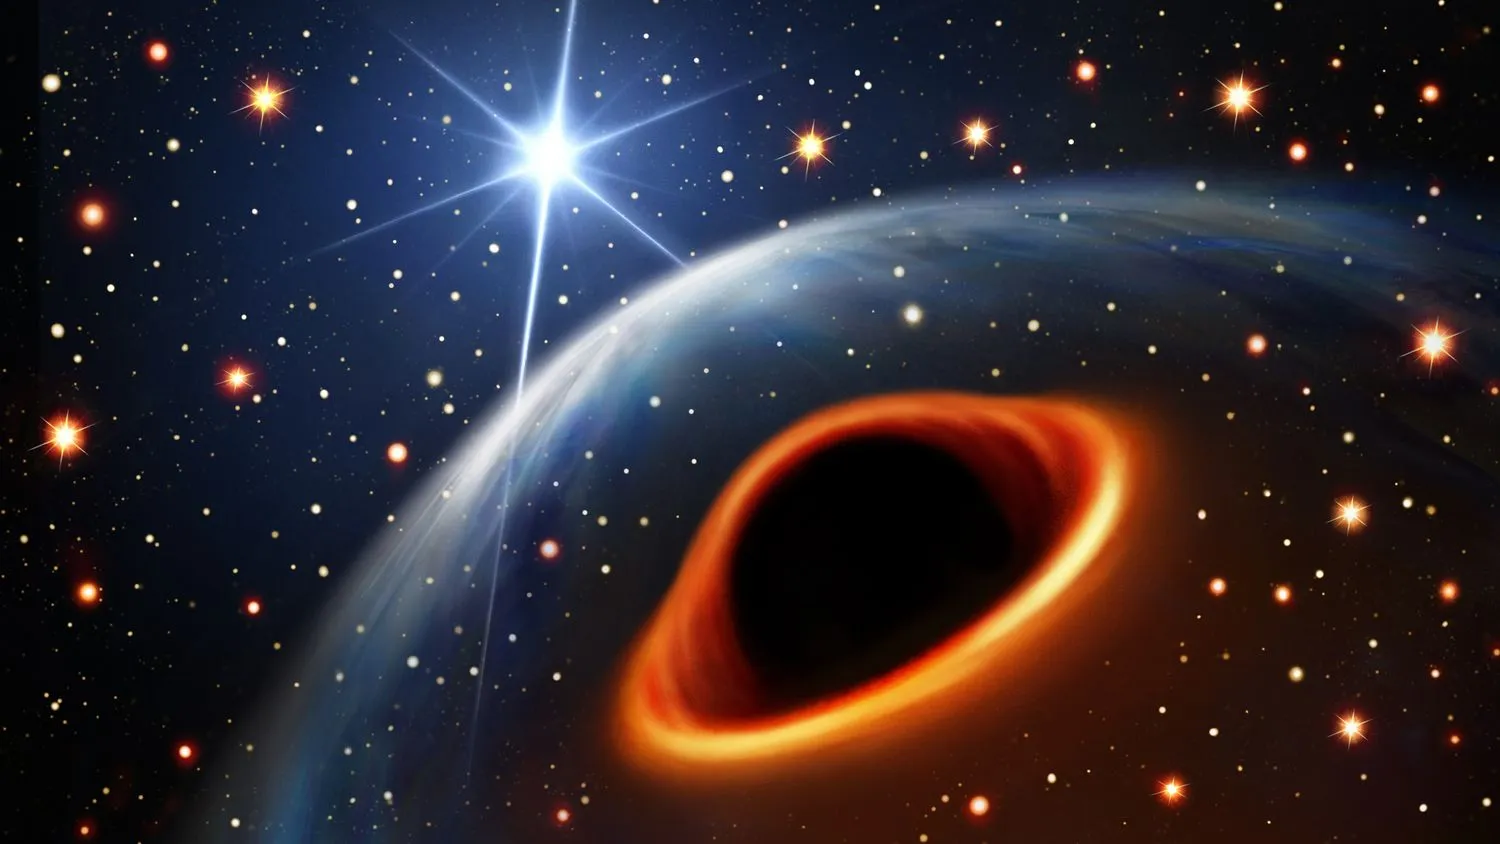 Eine Illustration des Systems unter der Annahme, dass das Objekt darin ein schwarzes Loch ist